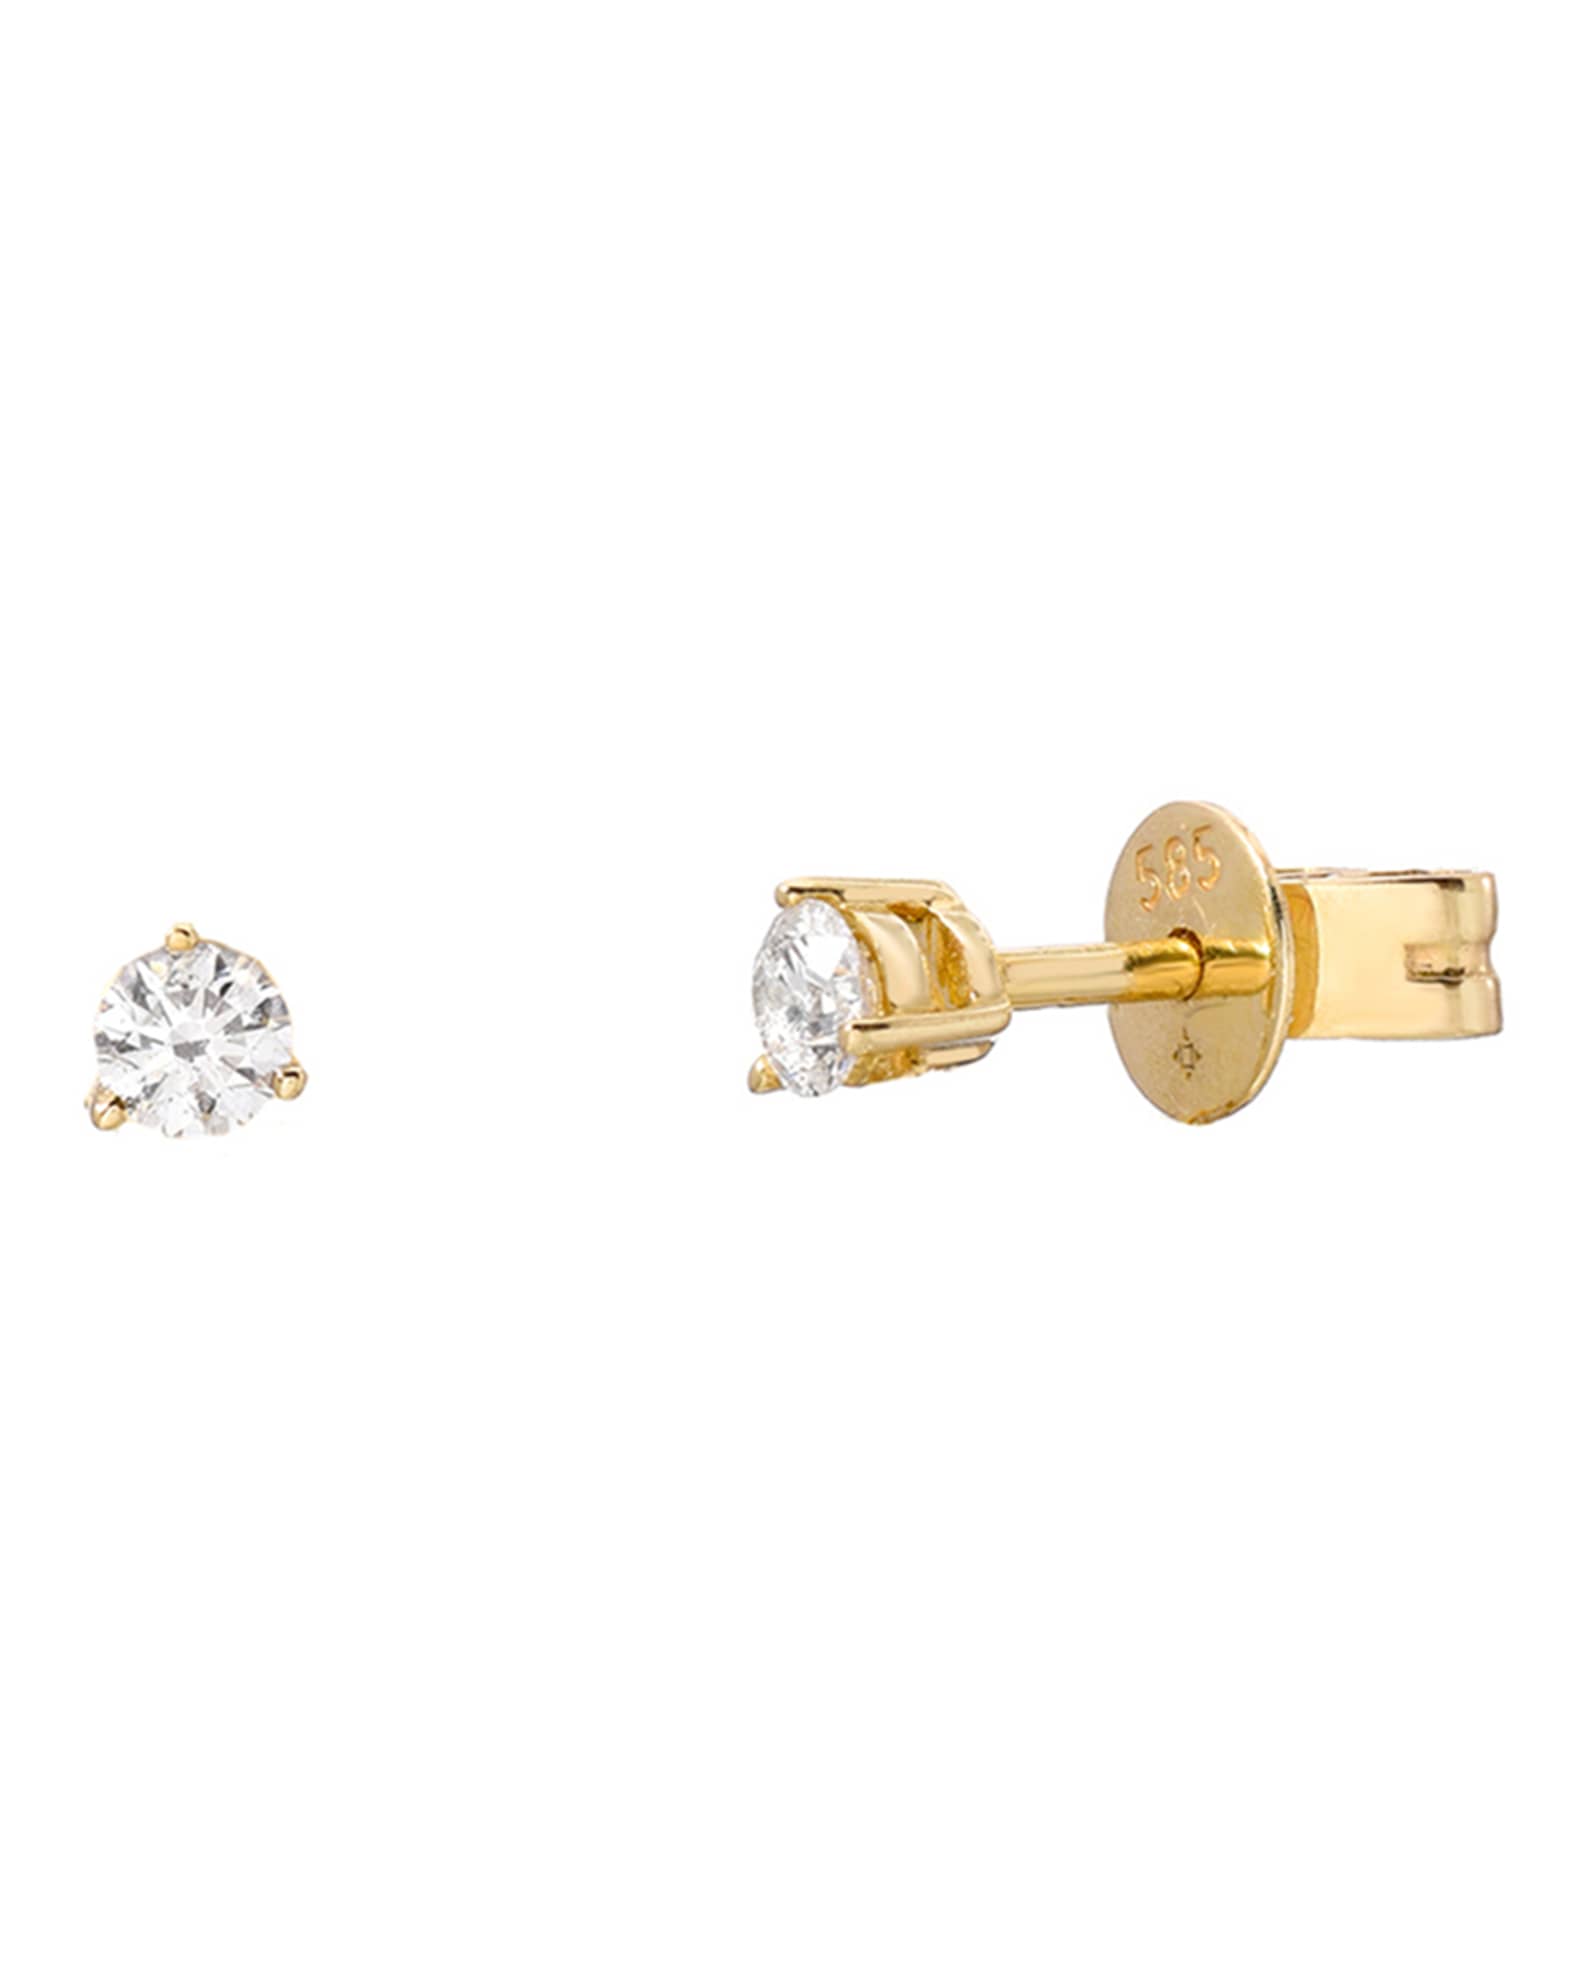 Zoe Lev Jewelry 14K Gold and Diamond x Stud Earrings